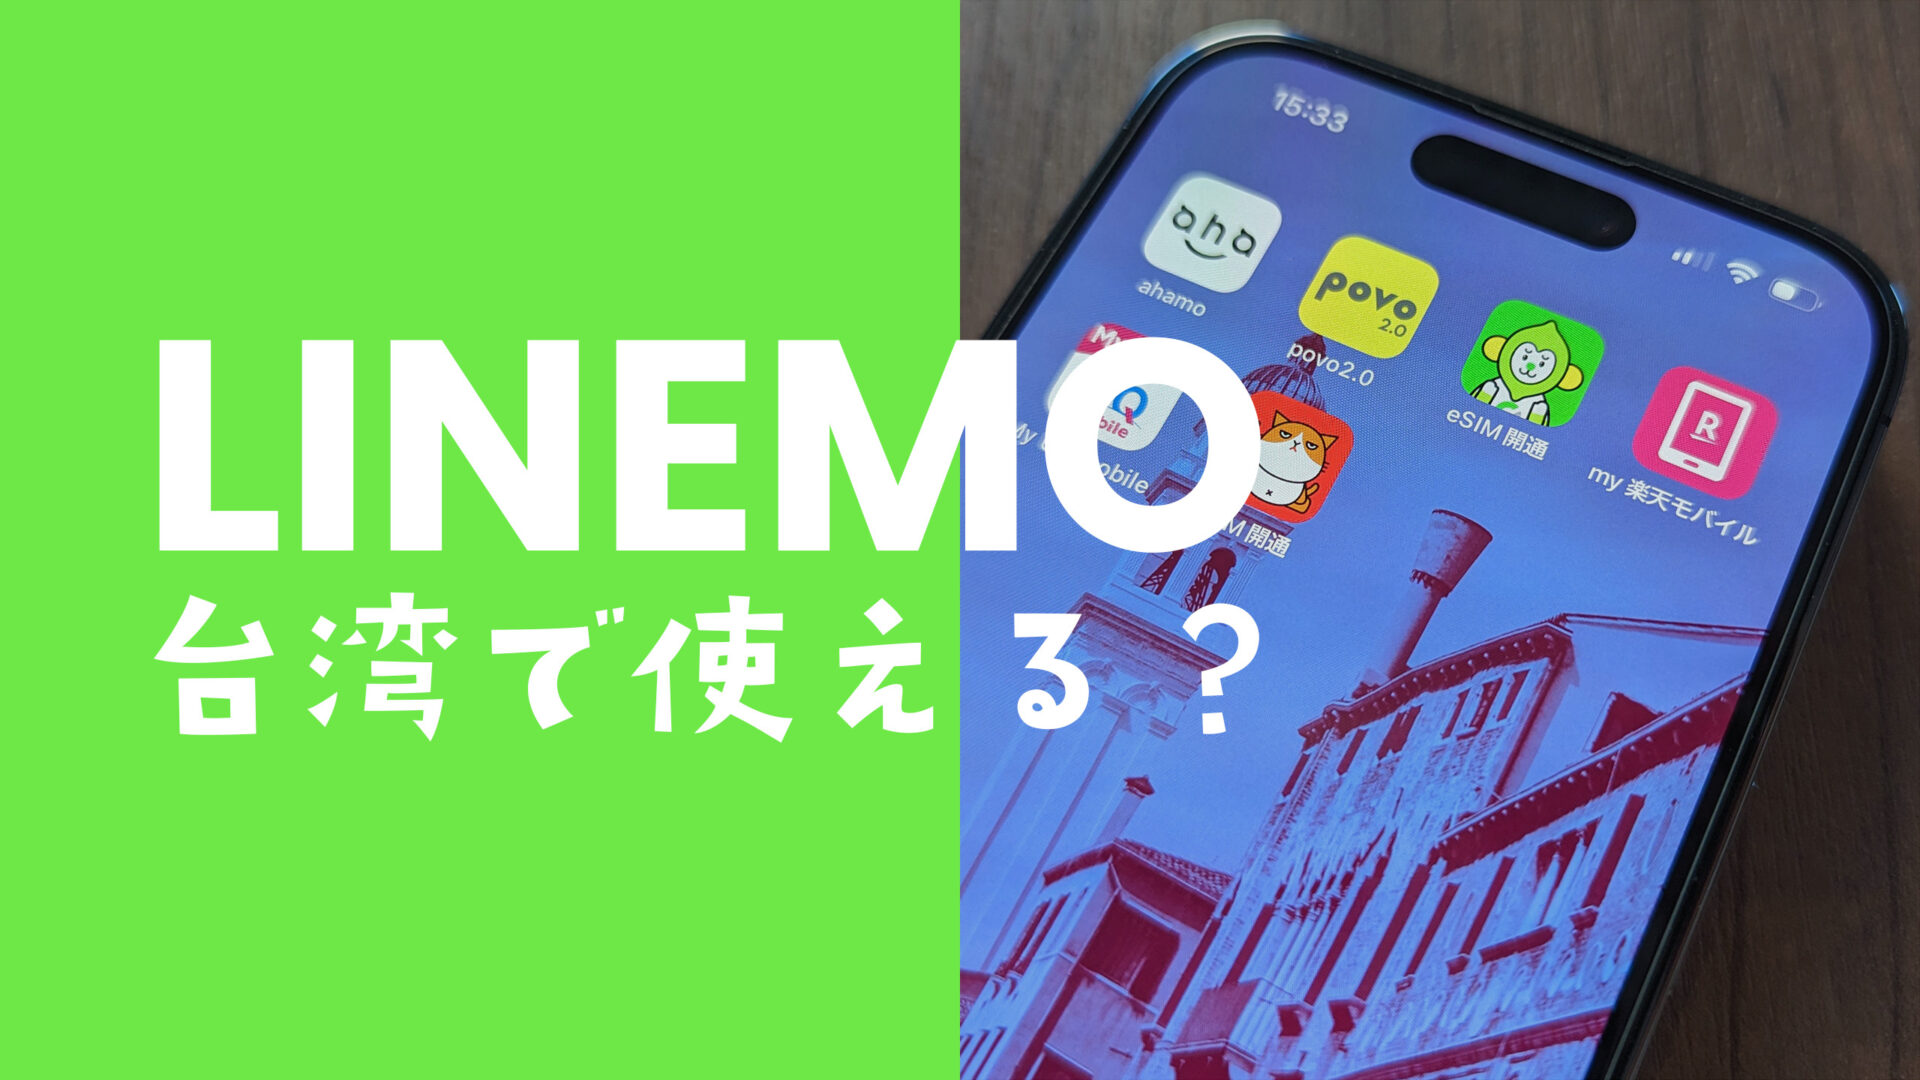 LINEMO(ラインモ)は台湾で使える&事前申込がお得。データ通信や電話&SMSもローミング。のサムネイル画像